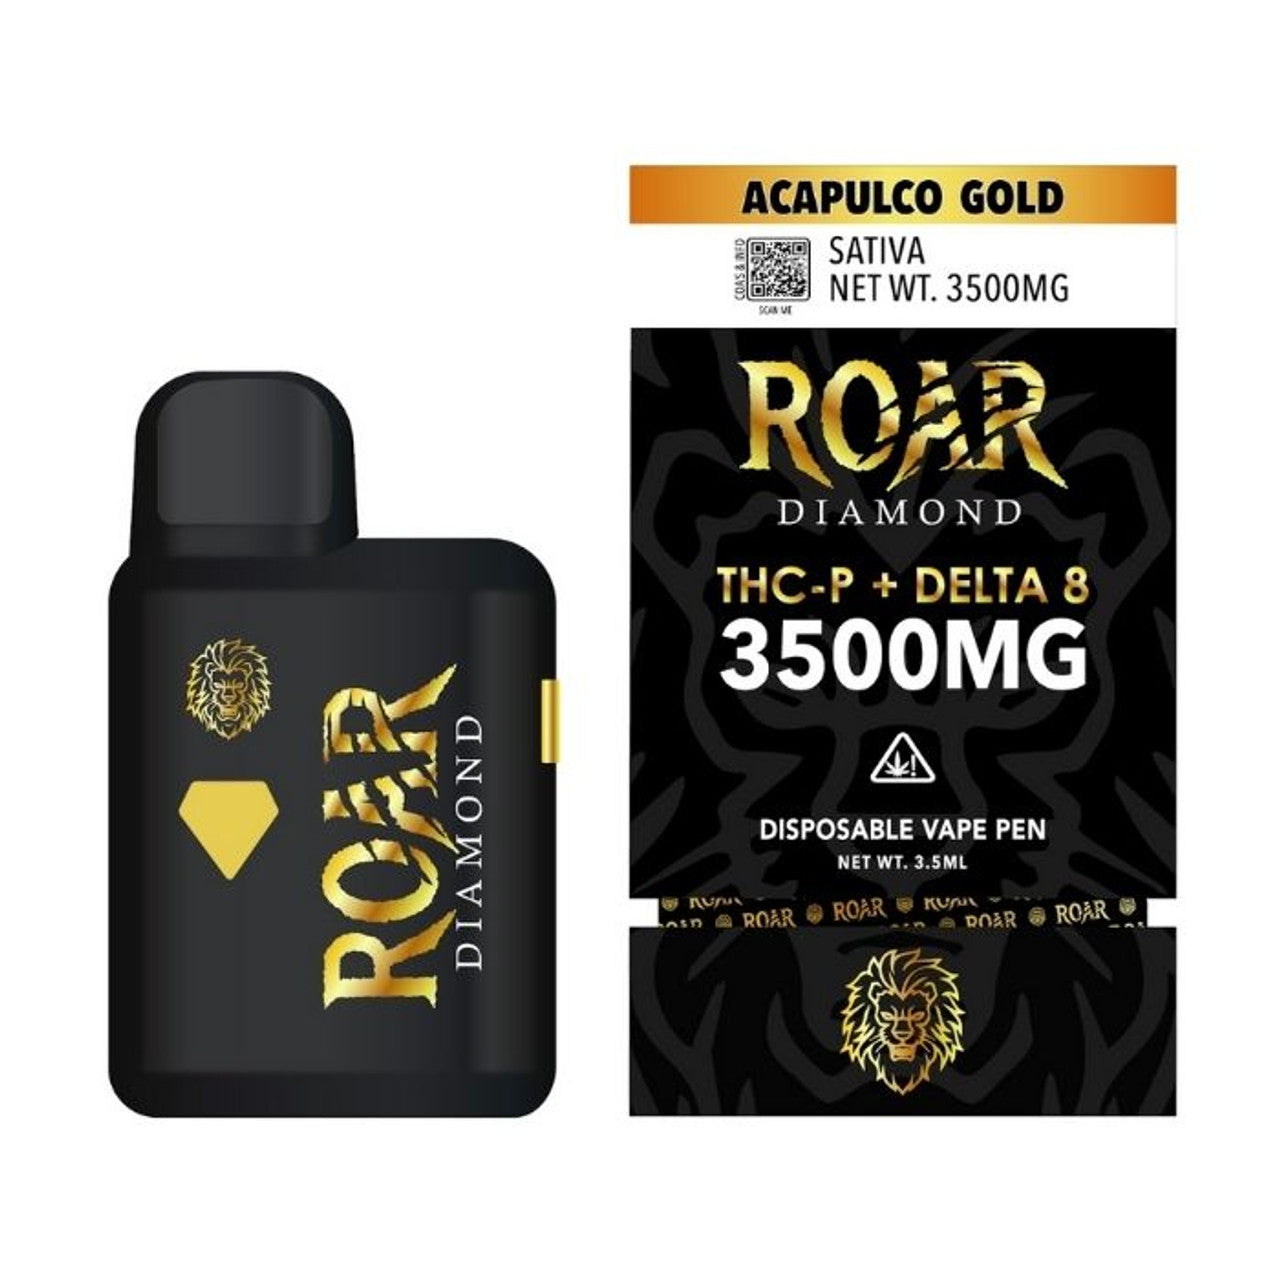 Roar Diamond 3.5g Disposable Vape Wholesale – 1 Box / 5 pcs